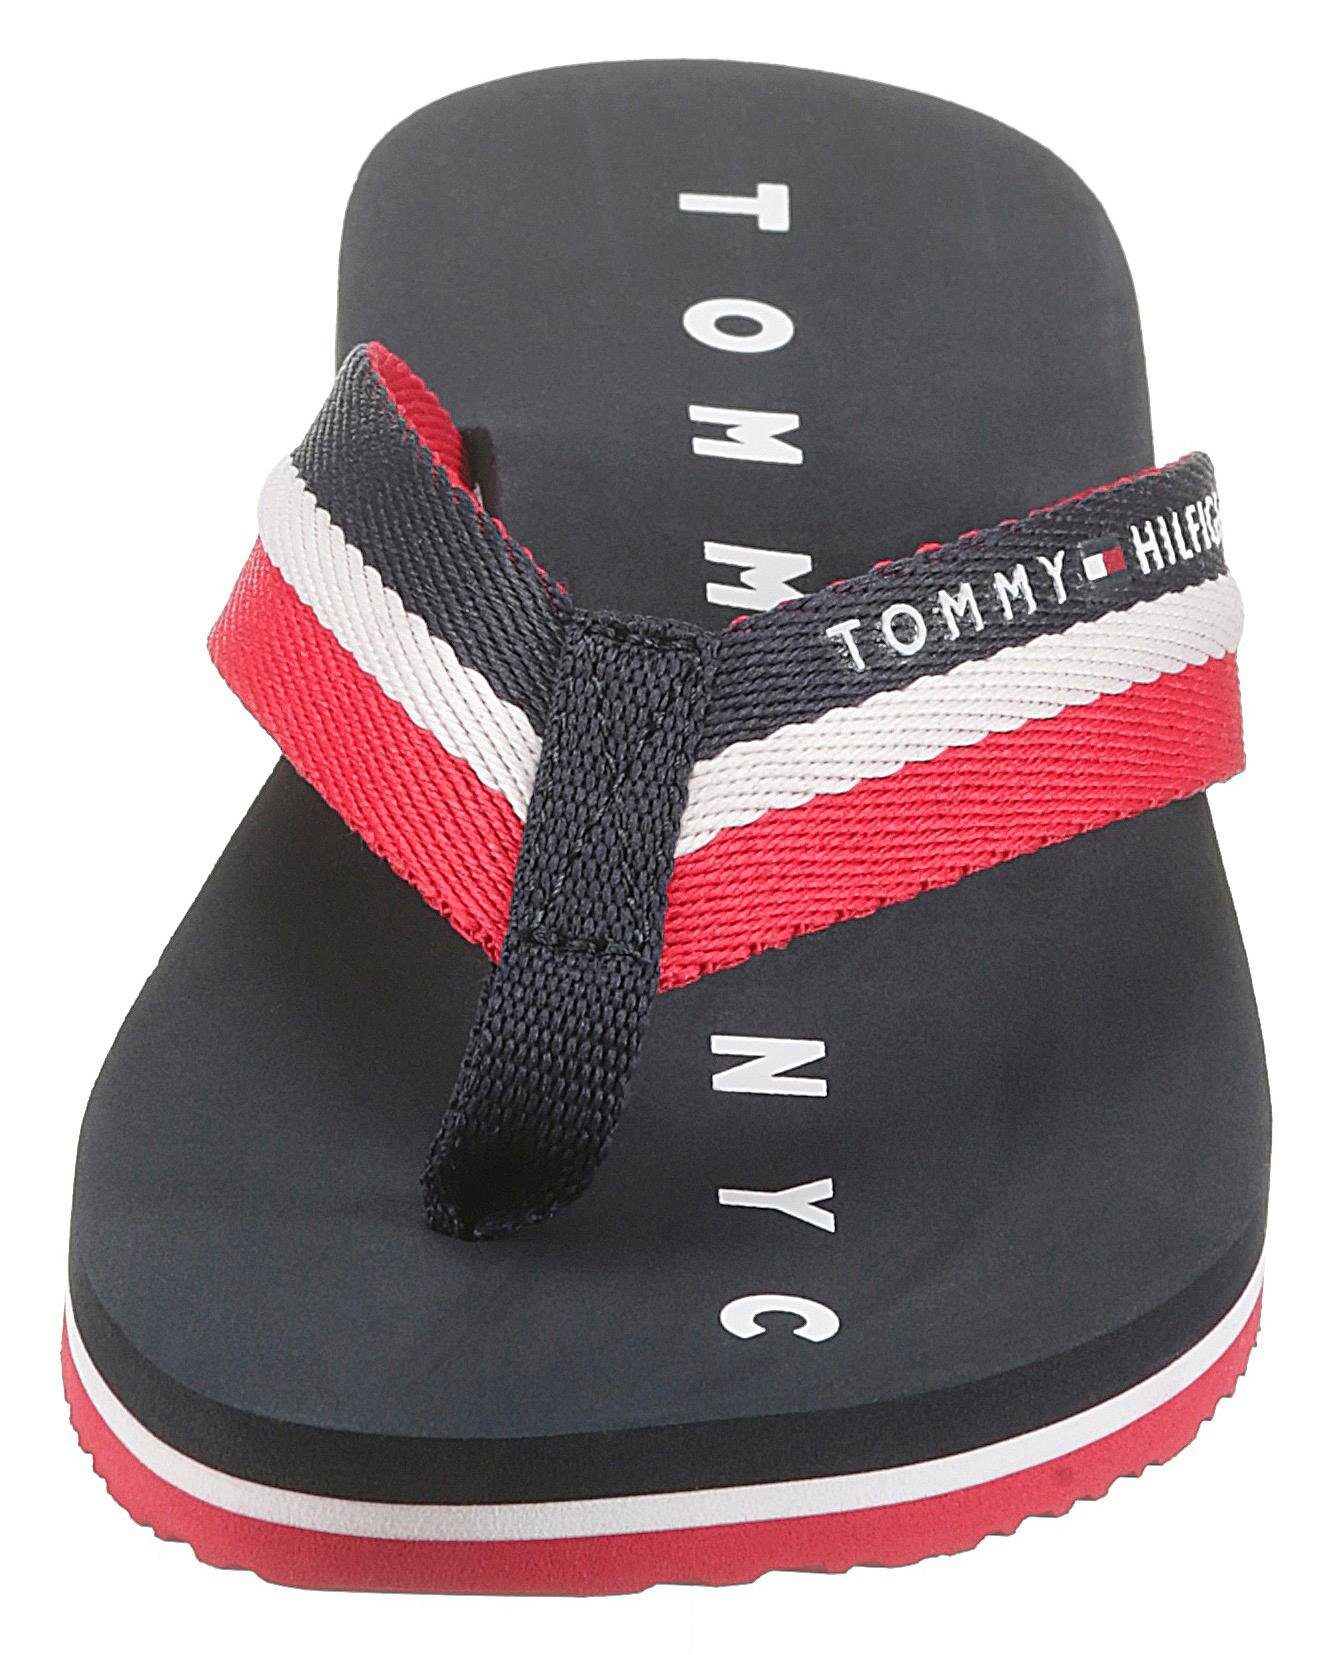 Tommy Hilfiger Zehentrenner NY der blau-weiß-rot Laufsohle SANDAL BEACH TOMMY ausf mit LOVES Logo